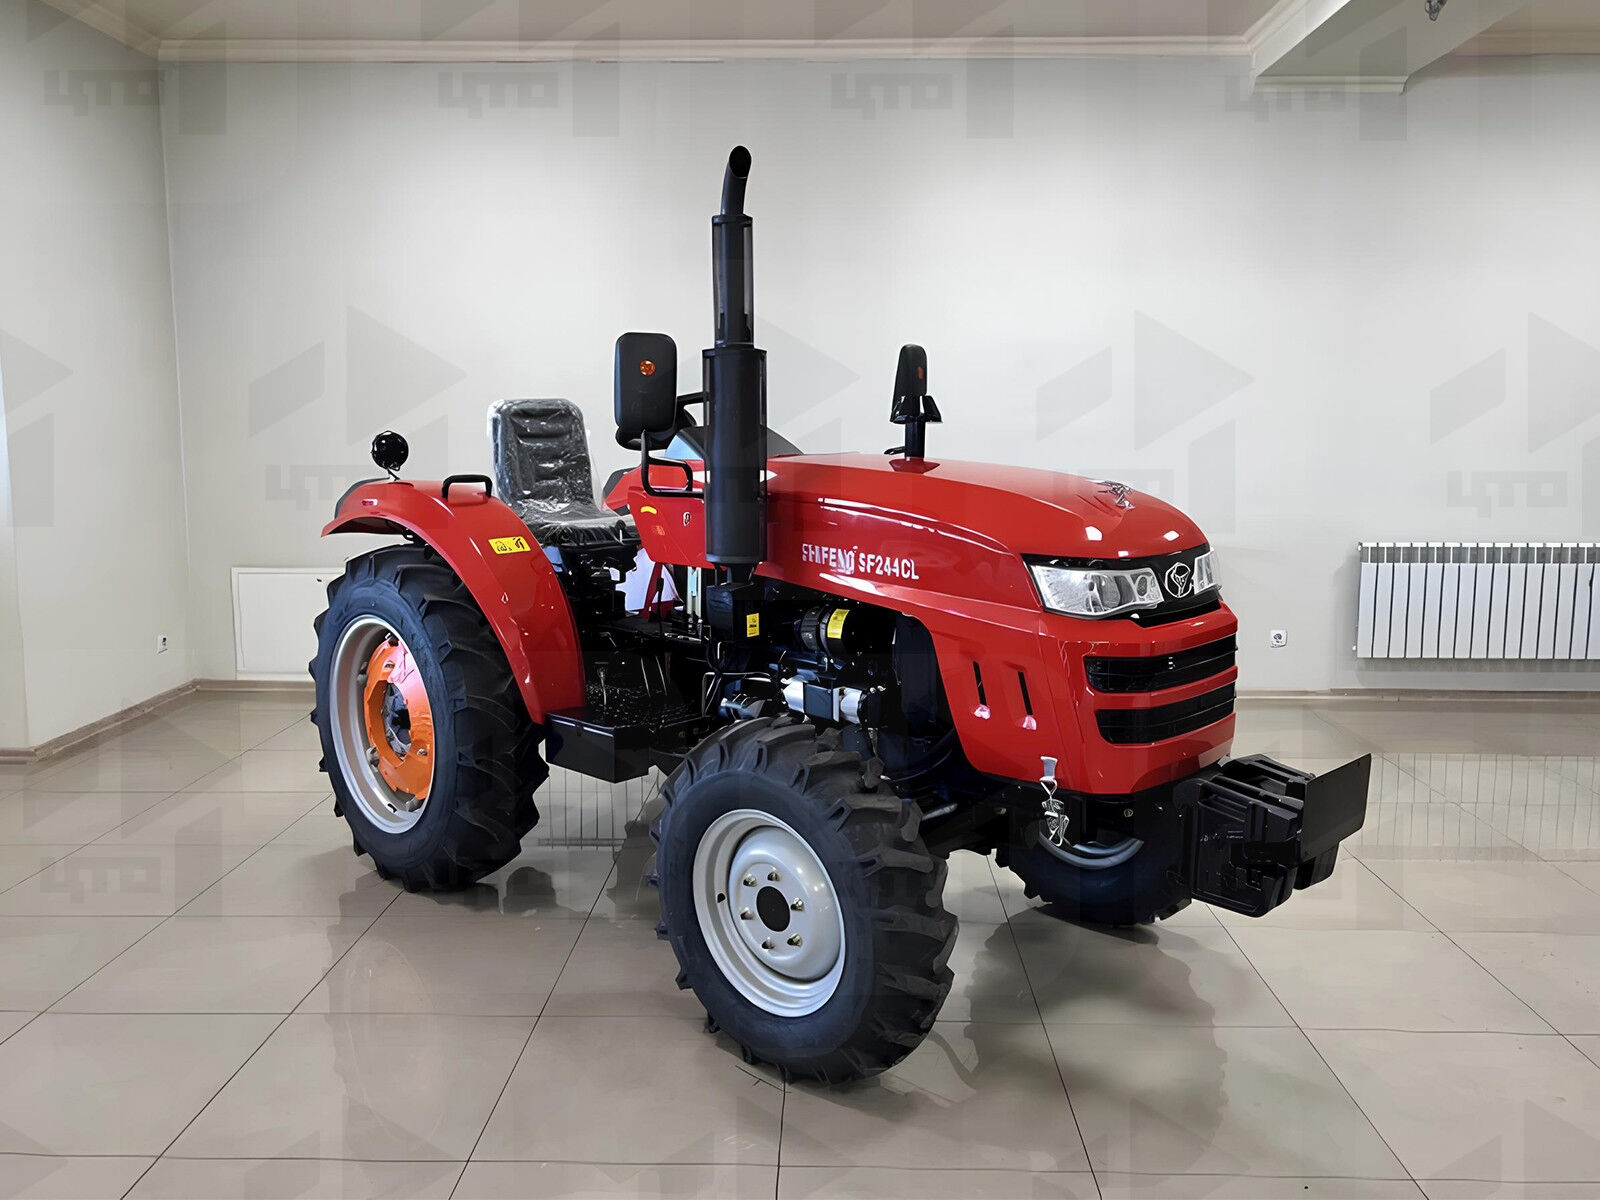 Мини трактор Shifeng SF-254CL (244СL) SHIFENG